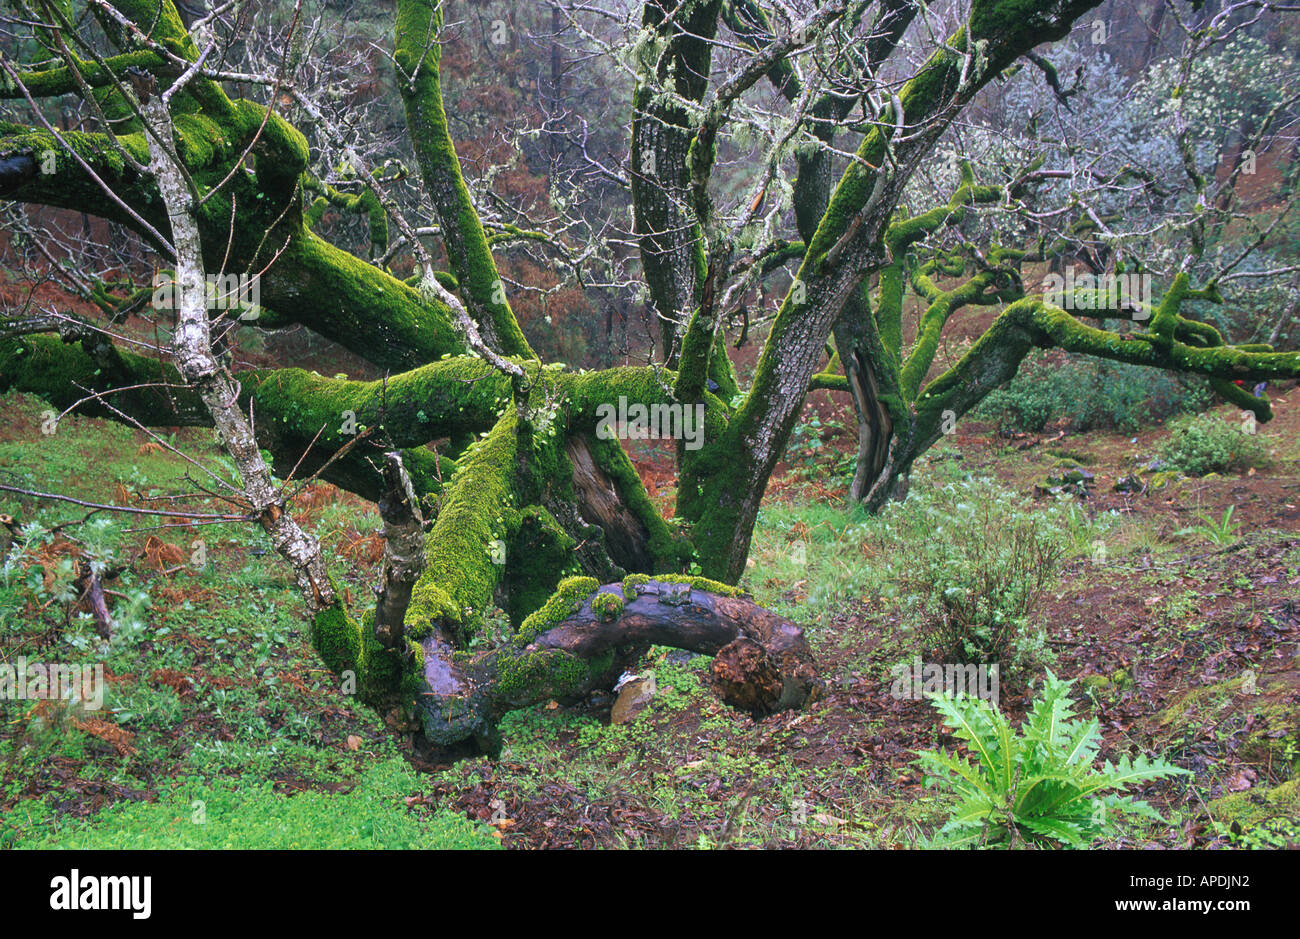 Bemooster Baum, Wald bei Juncalillo, Gran Canaria, Kanarische Inseln Spanien Stock Photo